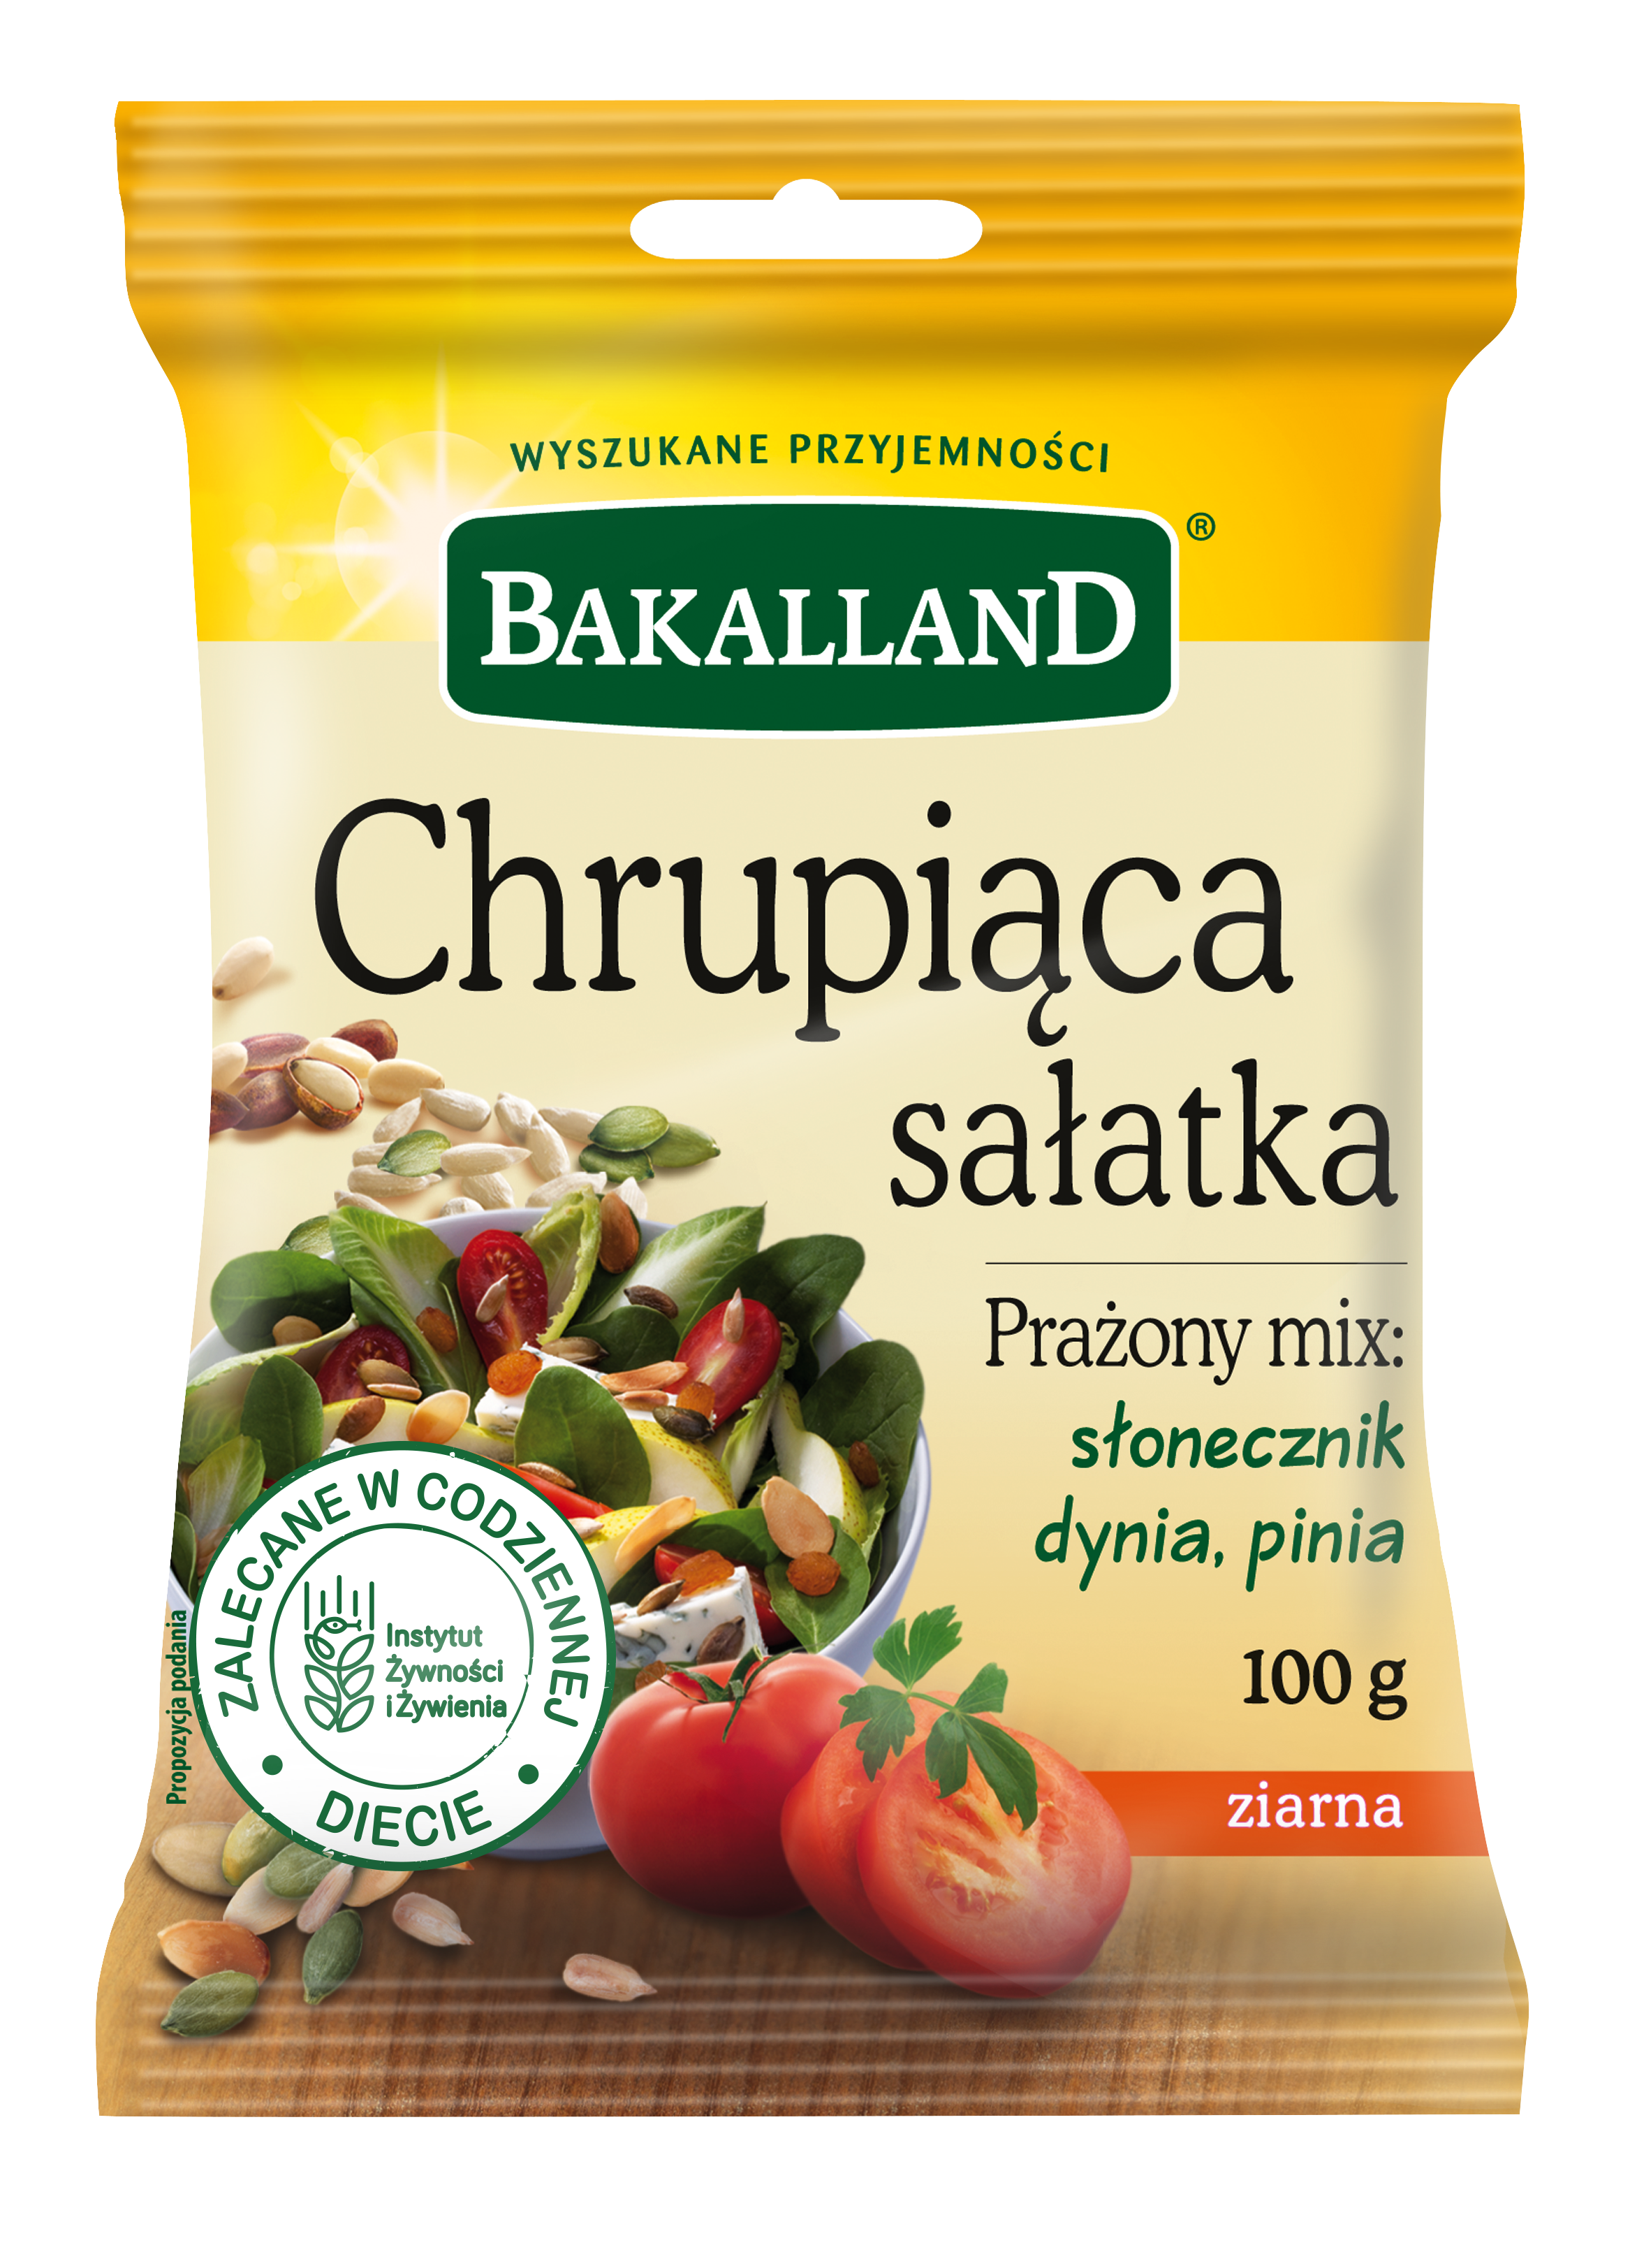 Produkty Bakalland z rekomendacją Instytutu Żywności i Żywienia